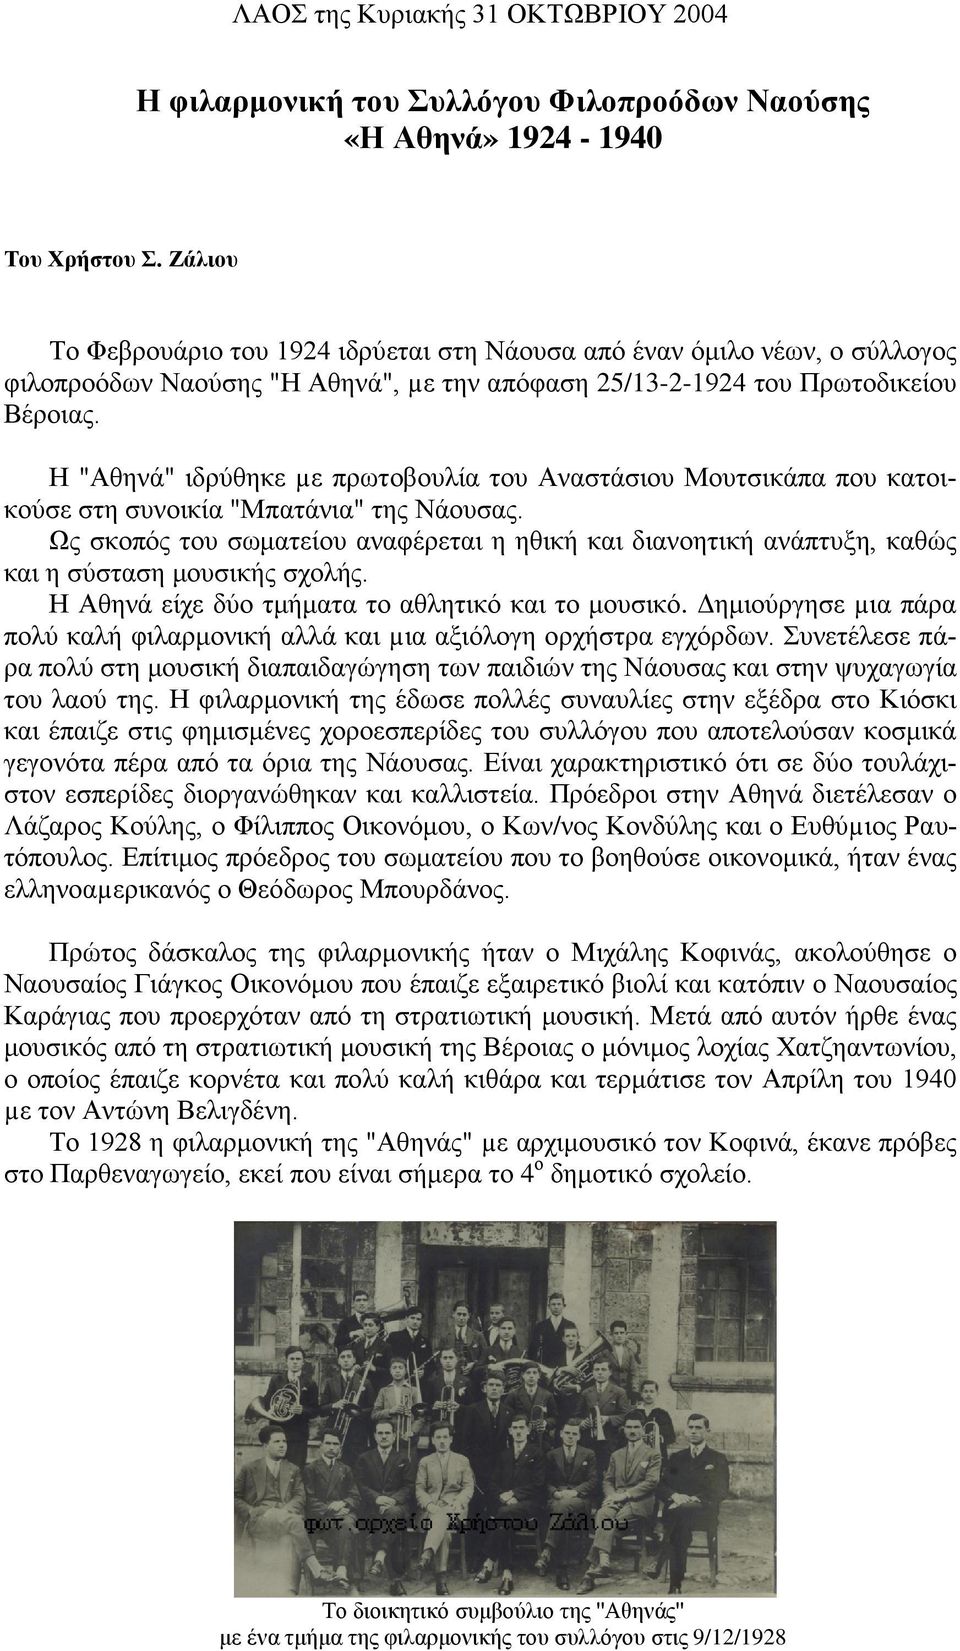 Η "Αθηνά" ιδρύθηκε µε πρωτοβουλία του Αναστάσιου Μουτσικάπα που κατοικούσε στη συνοικία "Μπατάνια" της Νάουσας.